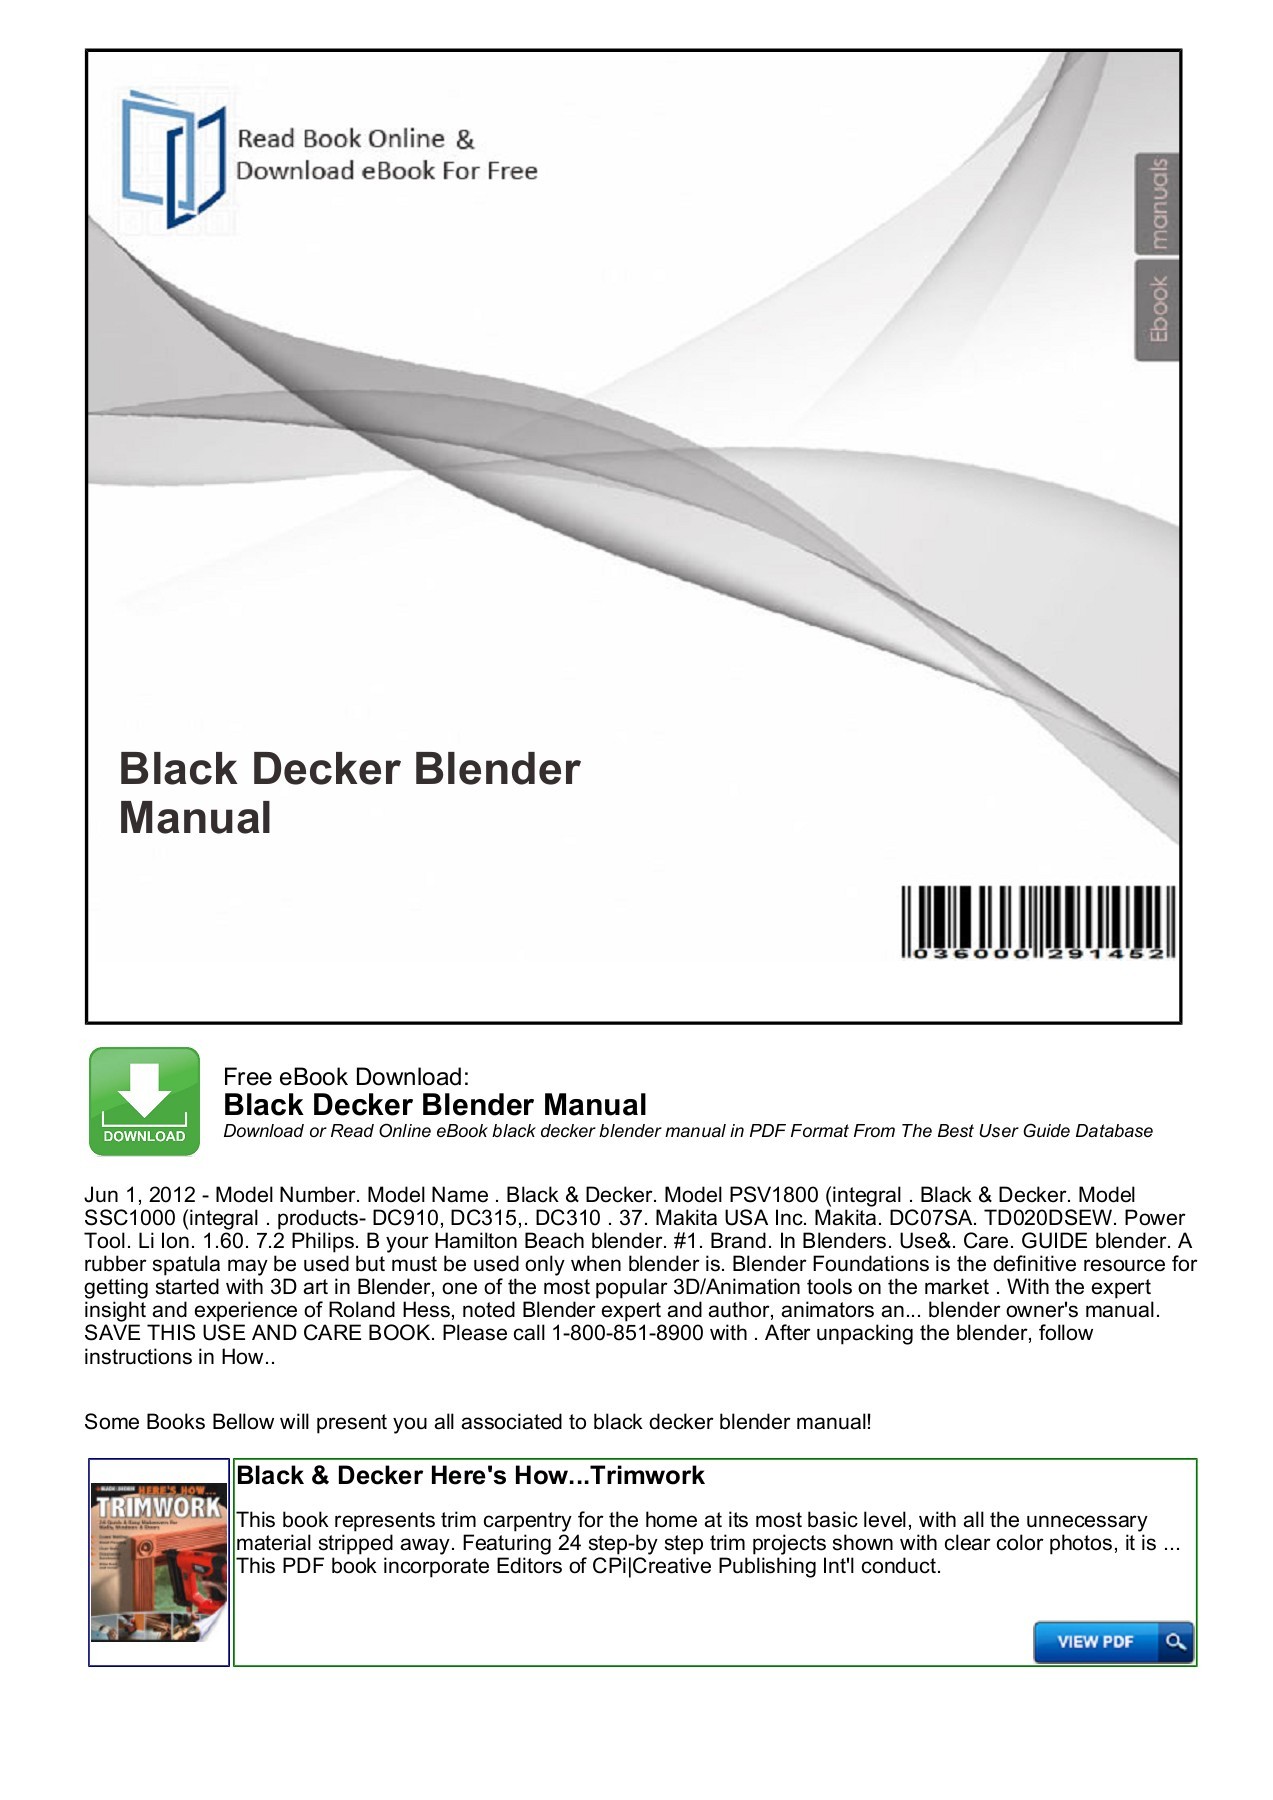 blender documentation pdf download